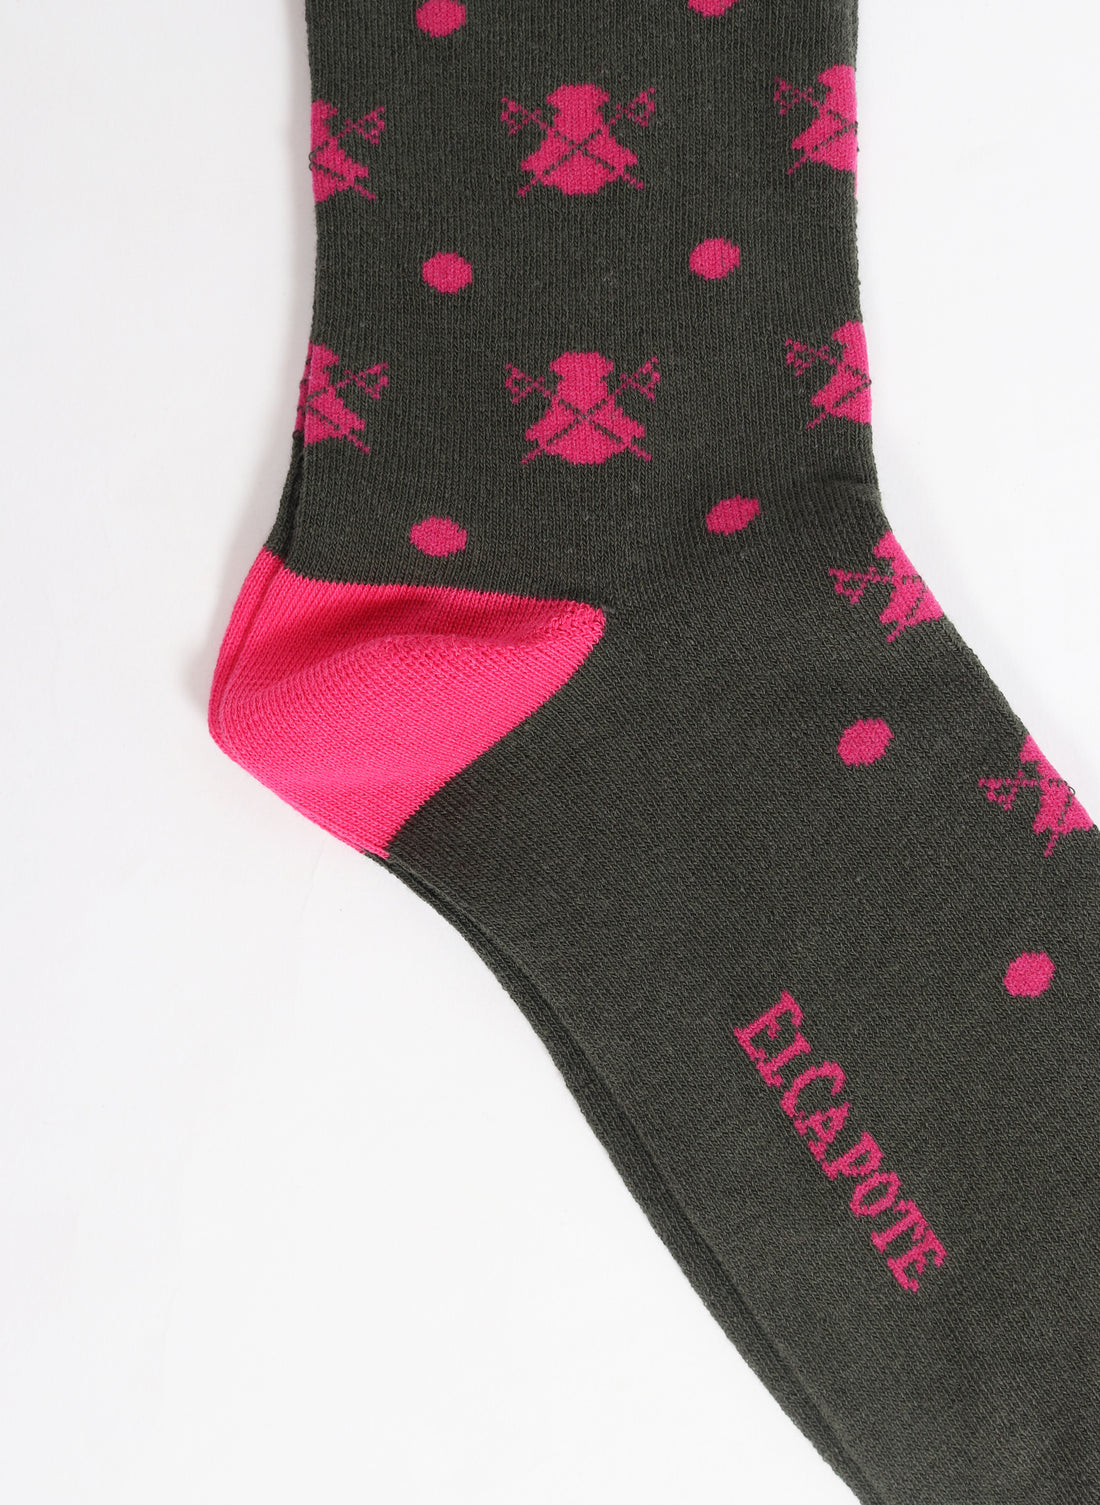 Khakigrüne Socke mit Umhängen und rosa Tupfen